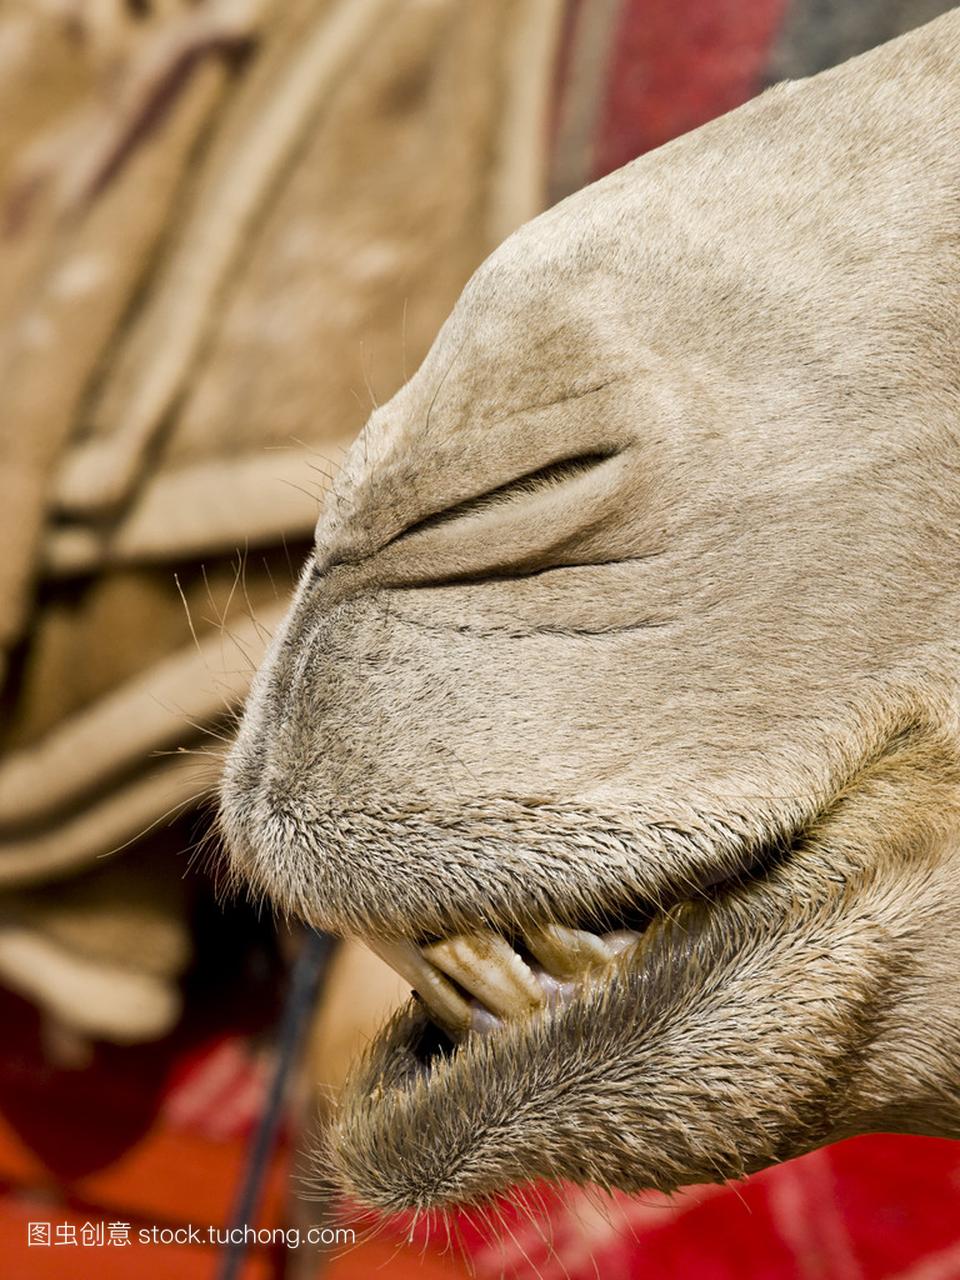 骆驼鼻子